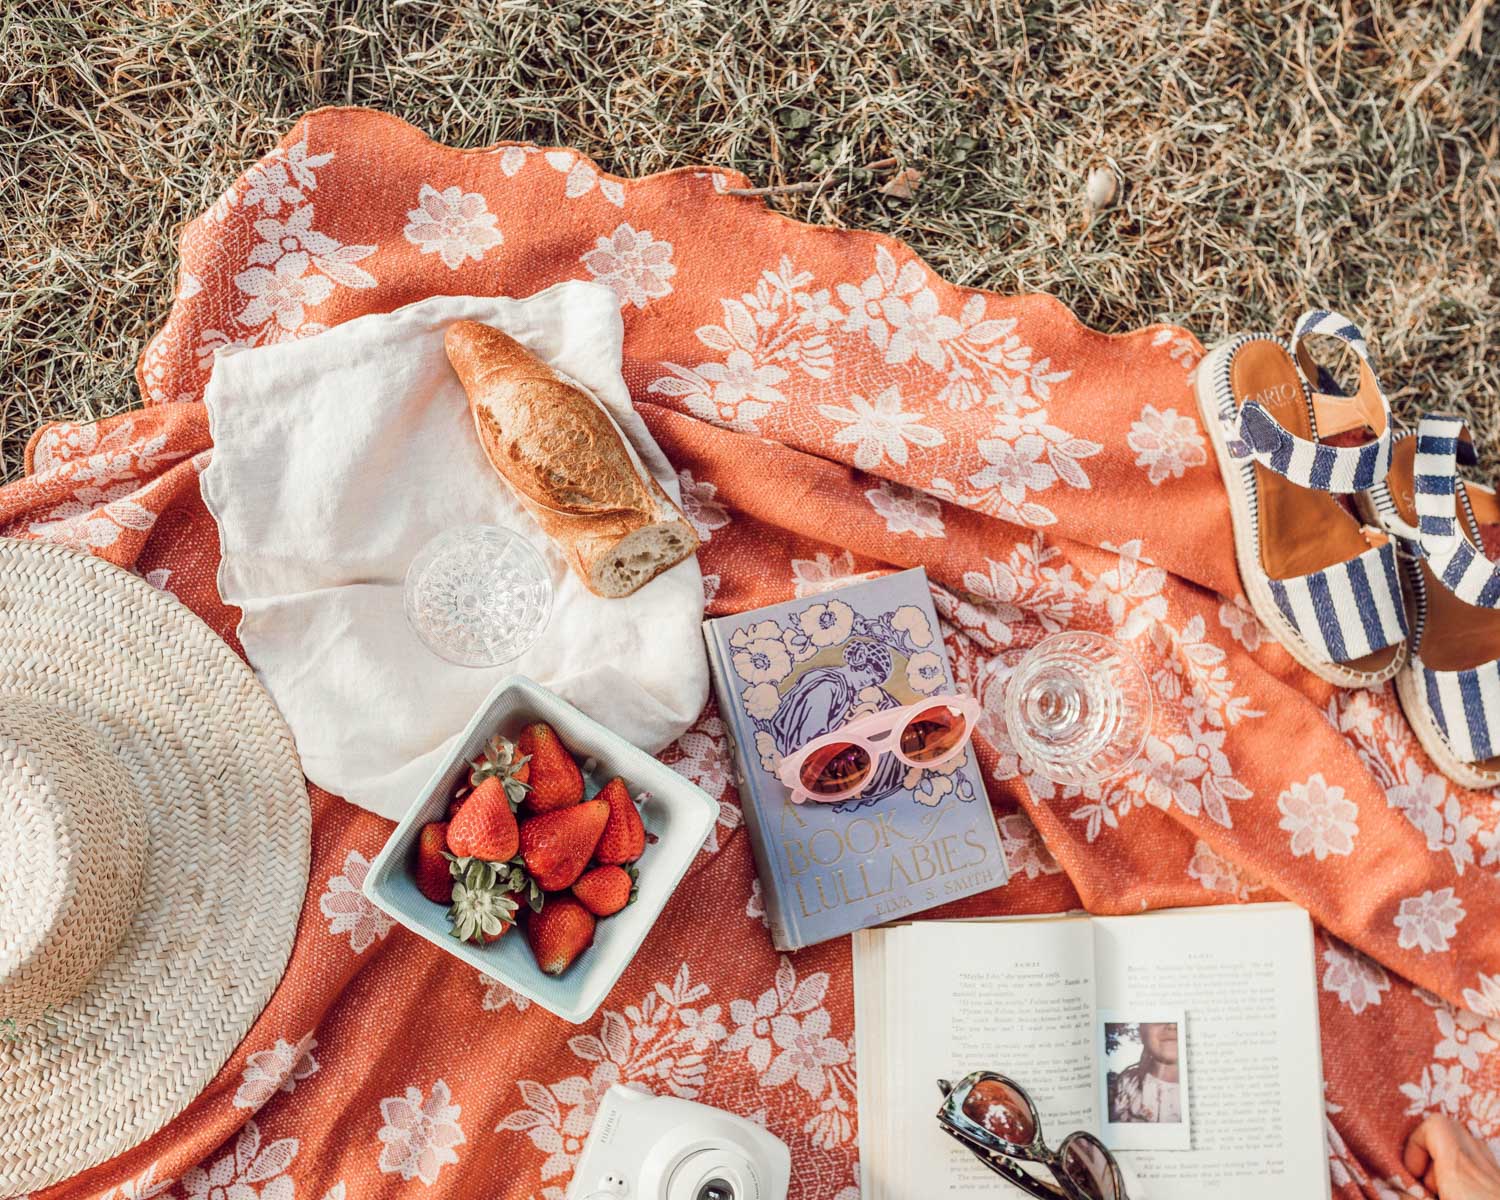 picnic spread in france